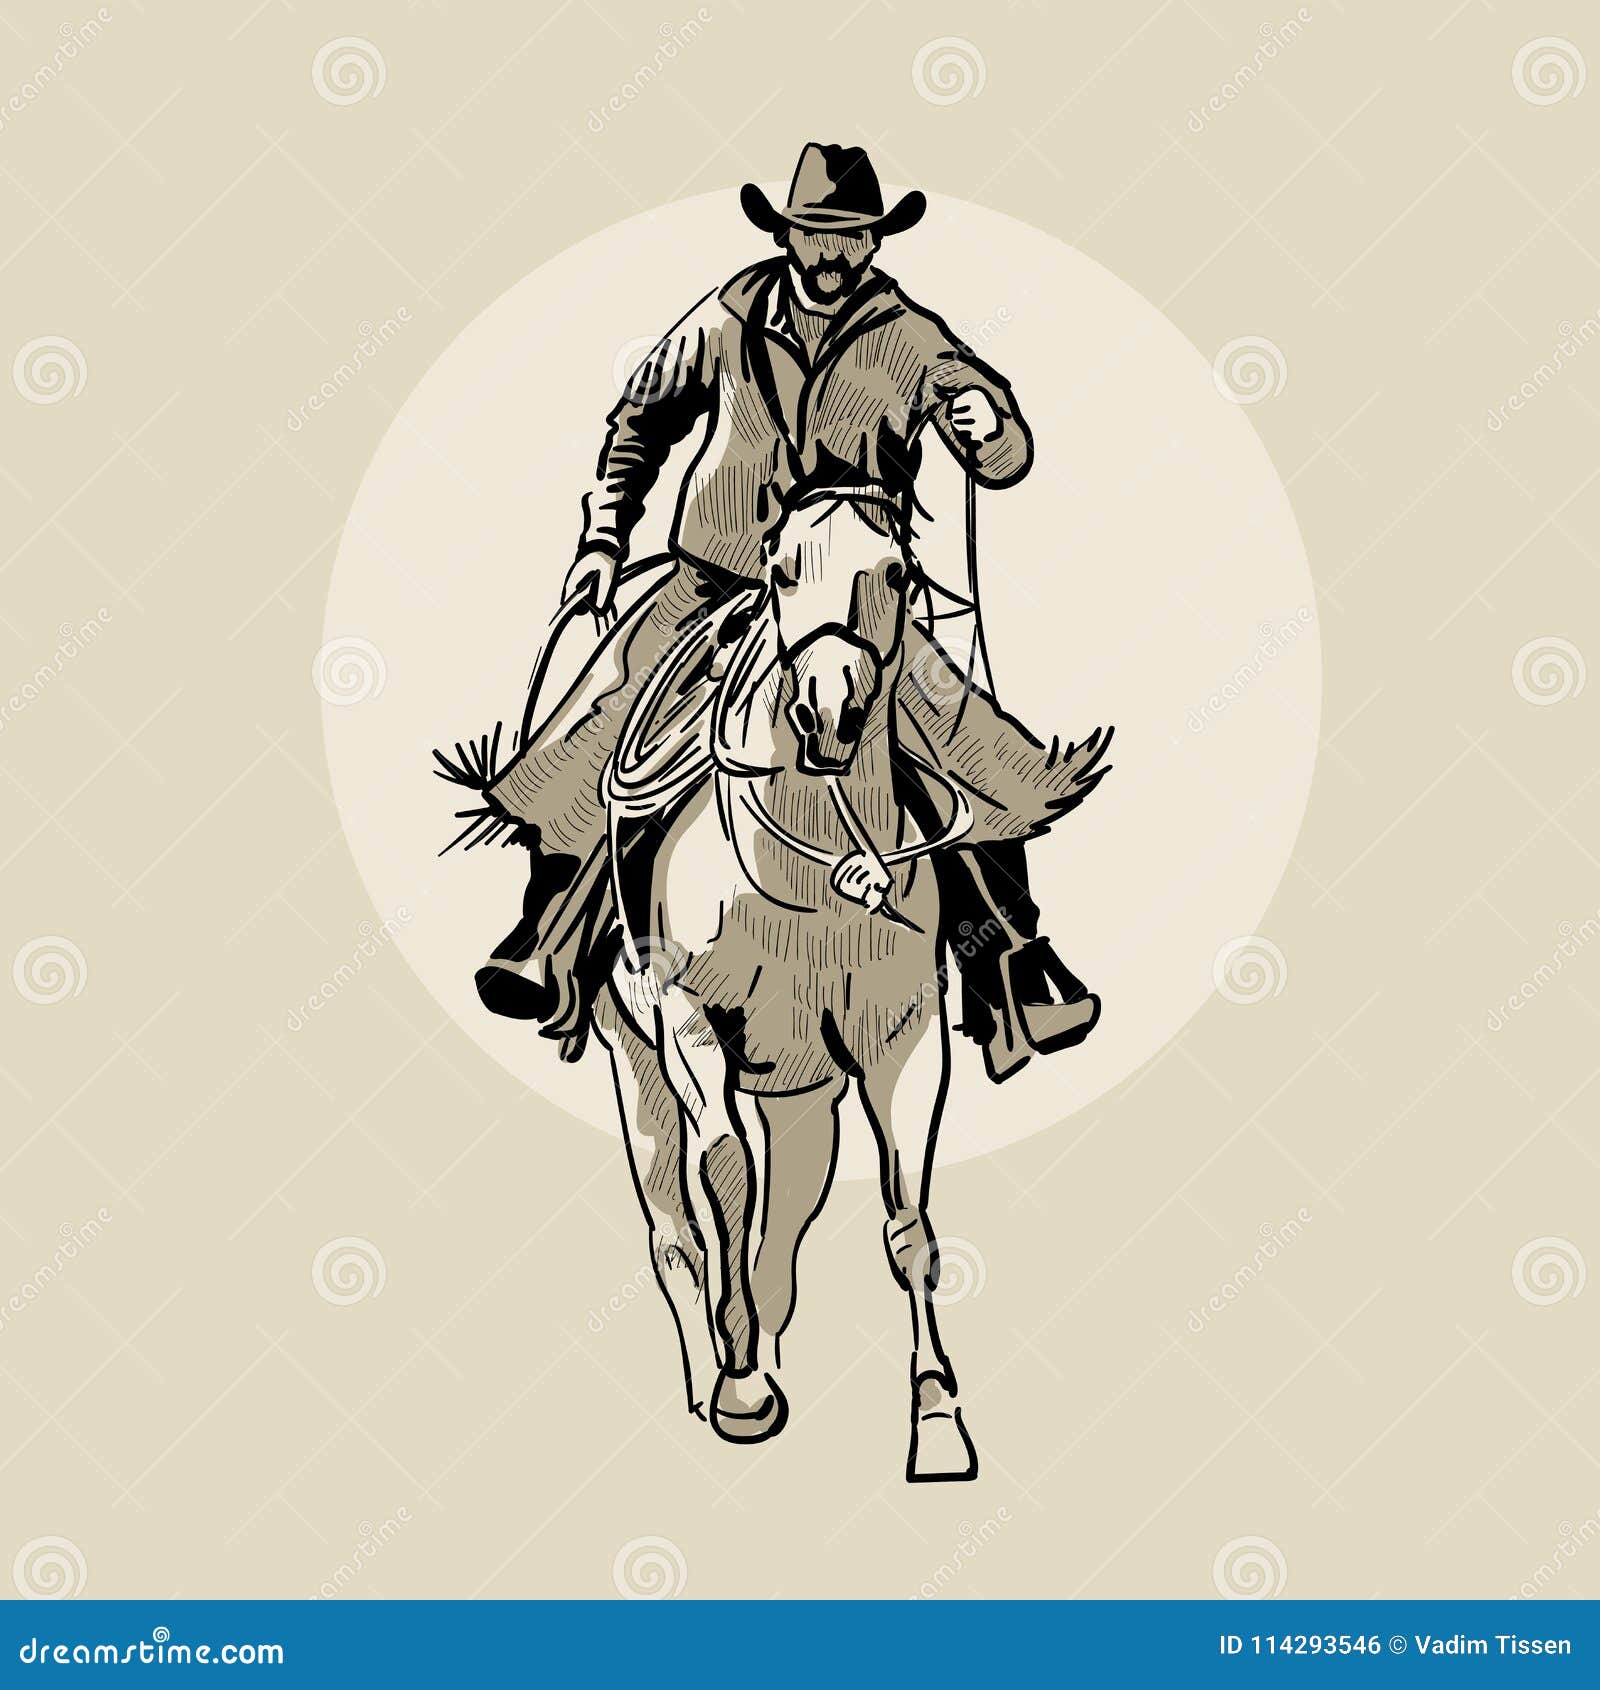 desenhando #cavalos🐴 #cavalocrioulo #vaqueiros #vaquejadabrasil